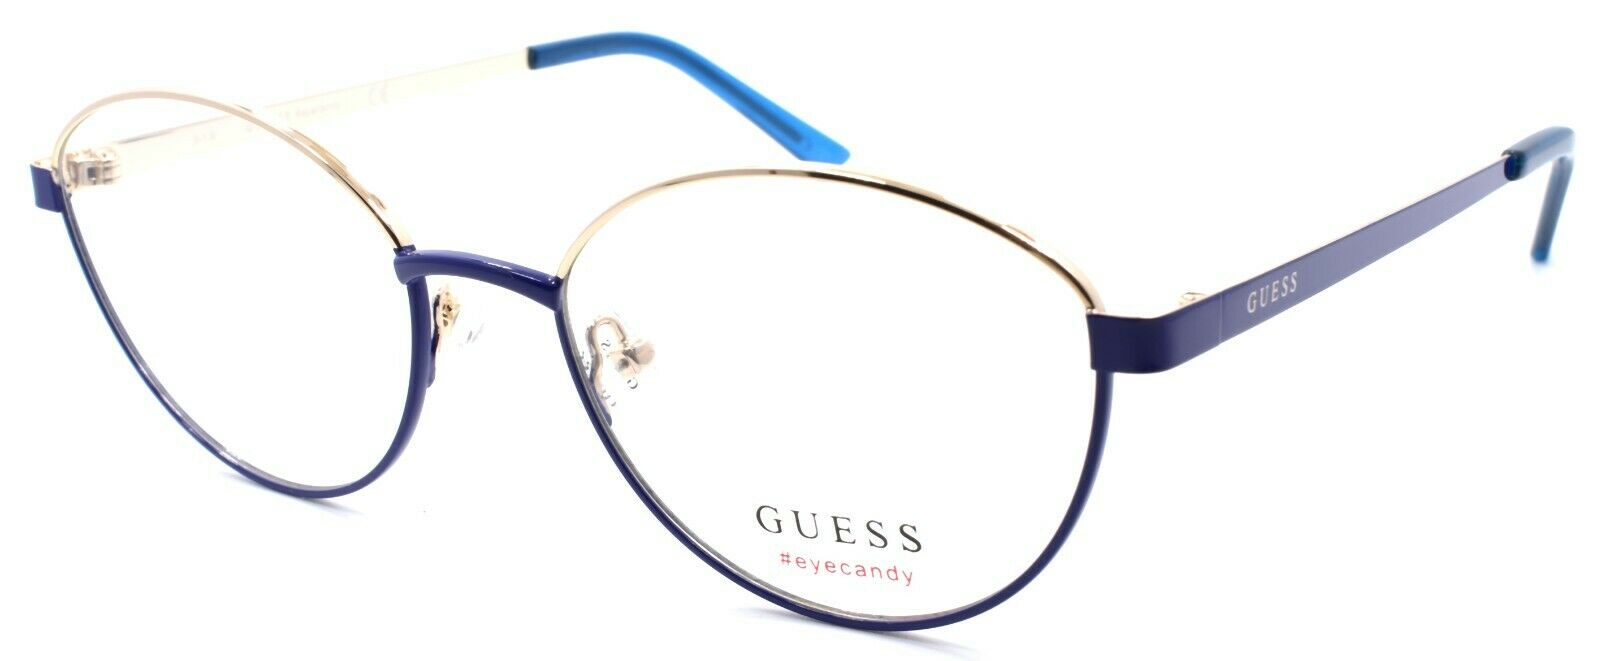 1-GUESS GU3043 090 Eye Candy Women's Eyeglasses Frames 51-17-140 Blue / Gold-889214044655-IKSpecs